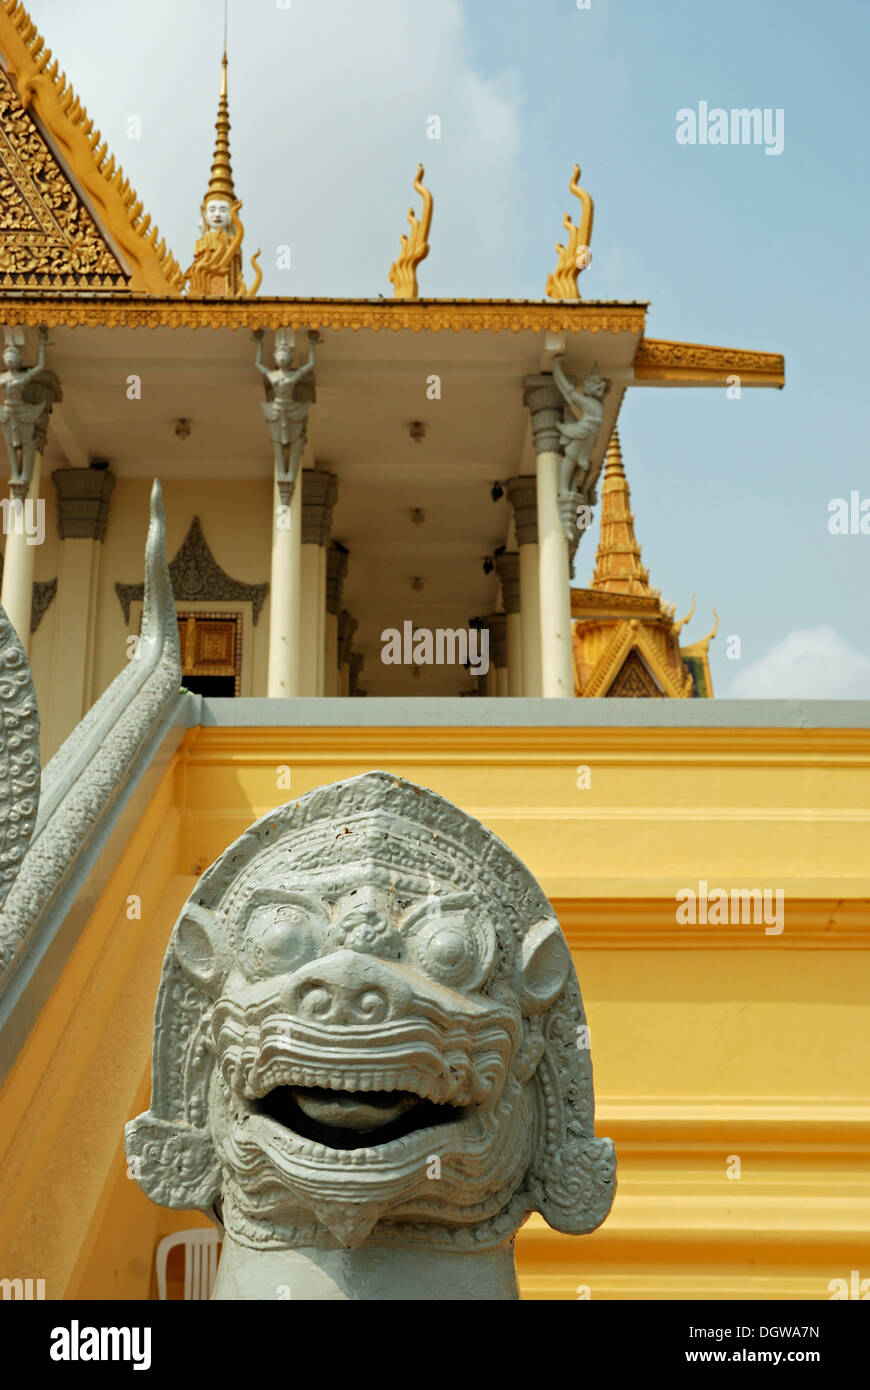 A Naga at the Royal Palace, Phnom Penh, Cambodia. Stock Photo